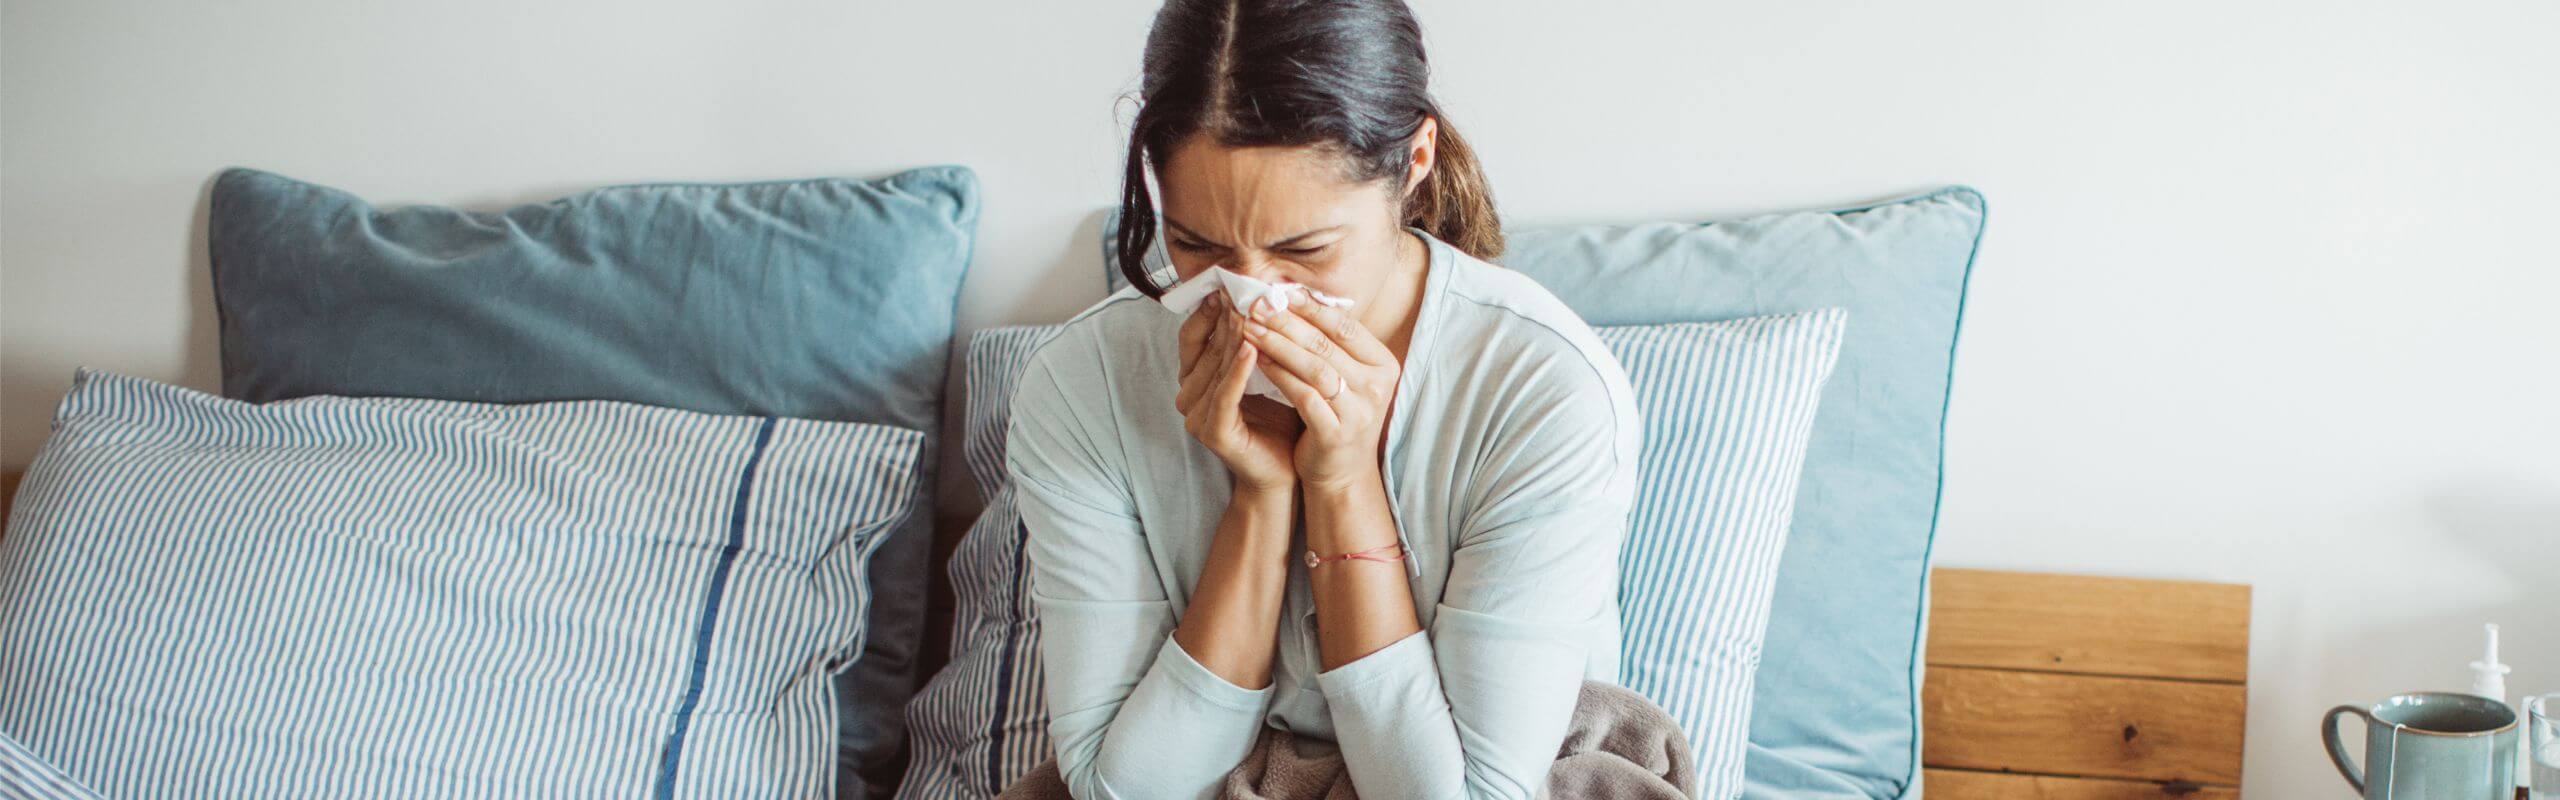 Influenza-Prävention: Einfache Schritte zum Schutz vor der Grippe